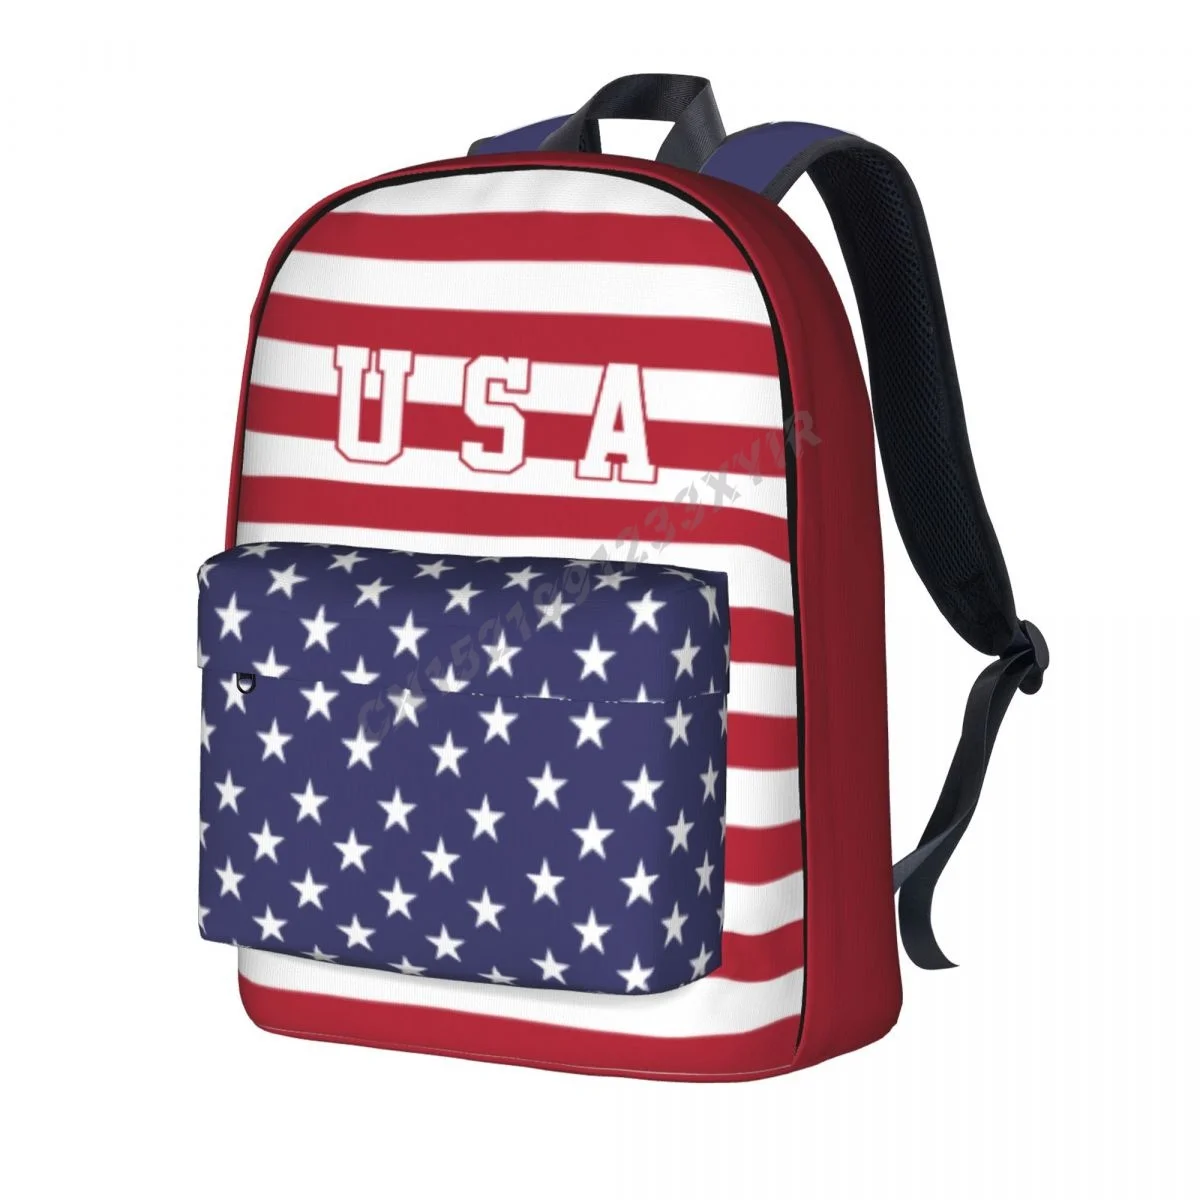 Mochila Unisex con bandera de los Estados Unidos, Bolsa Escolar de Stitch...